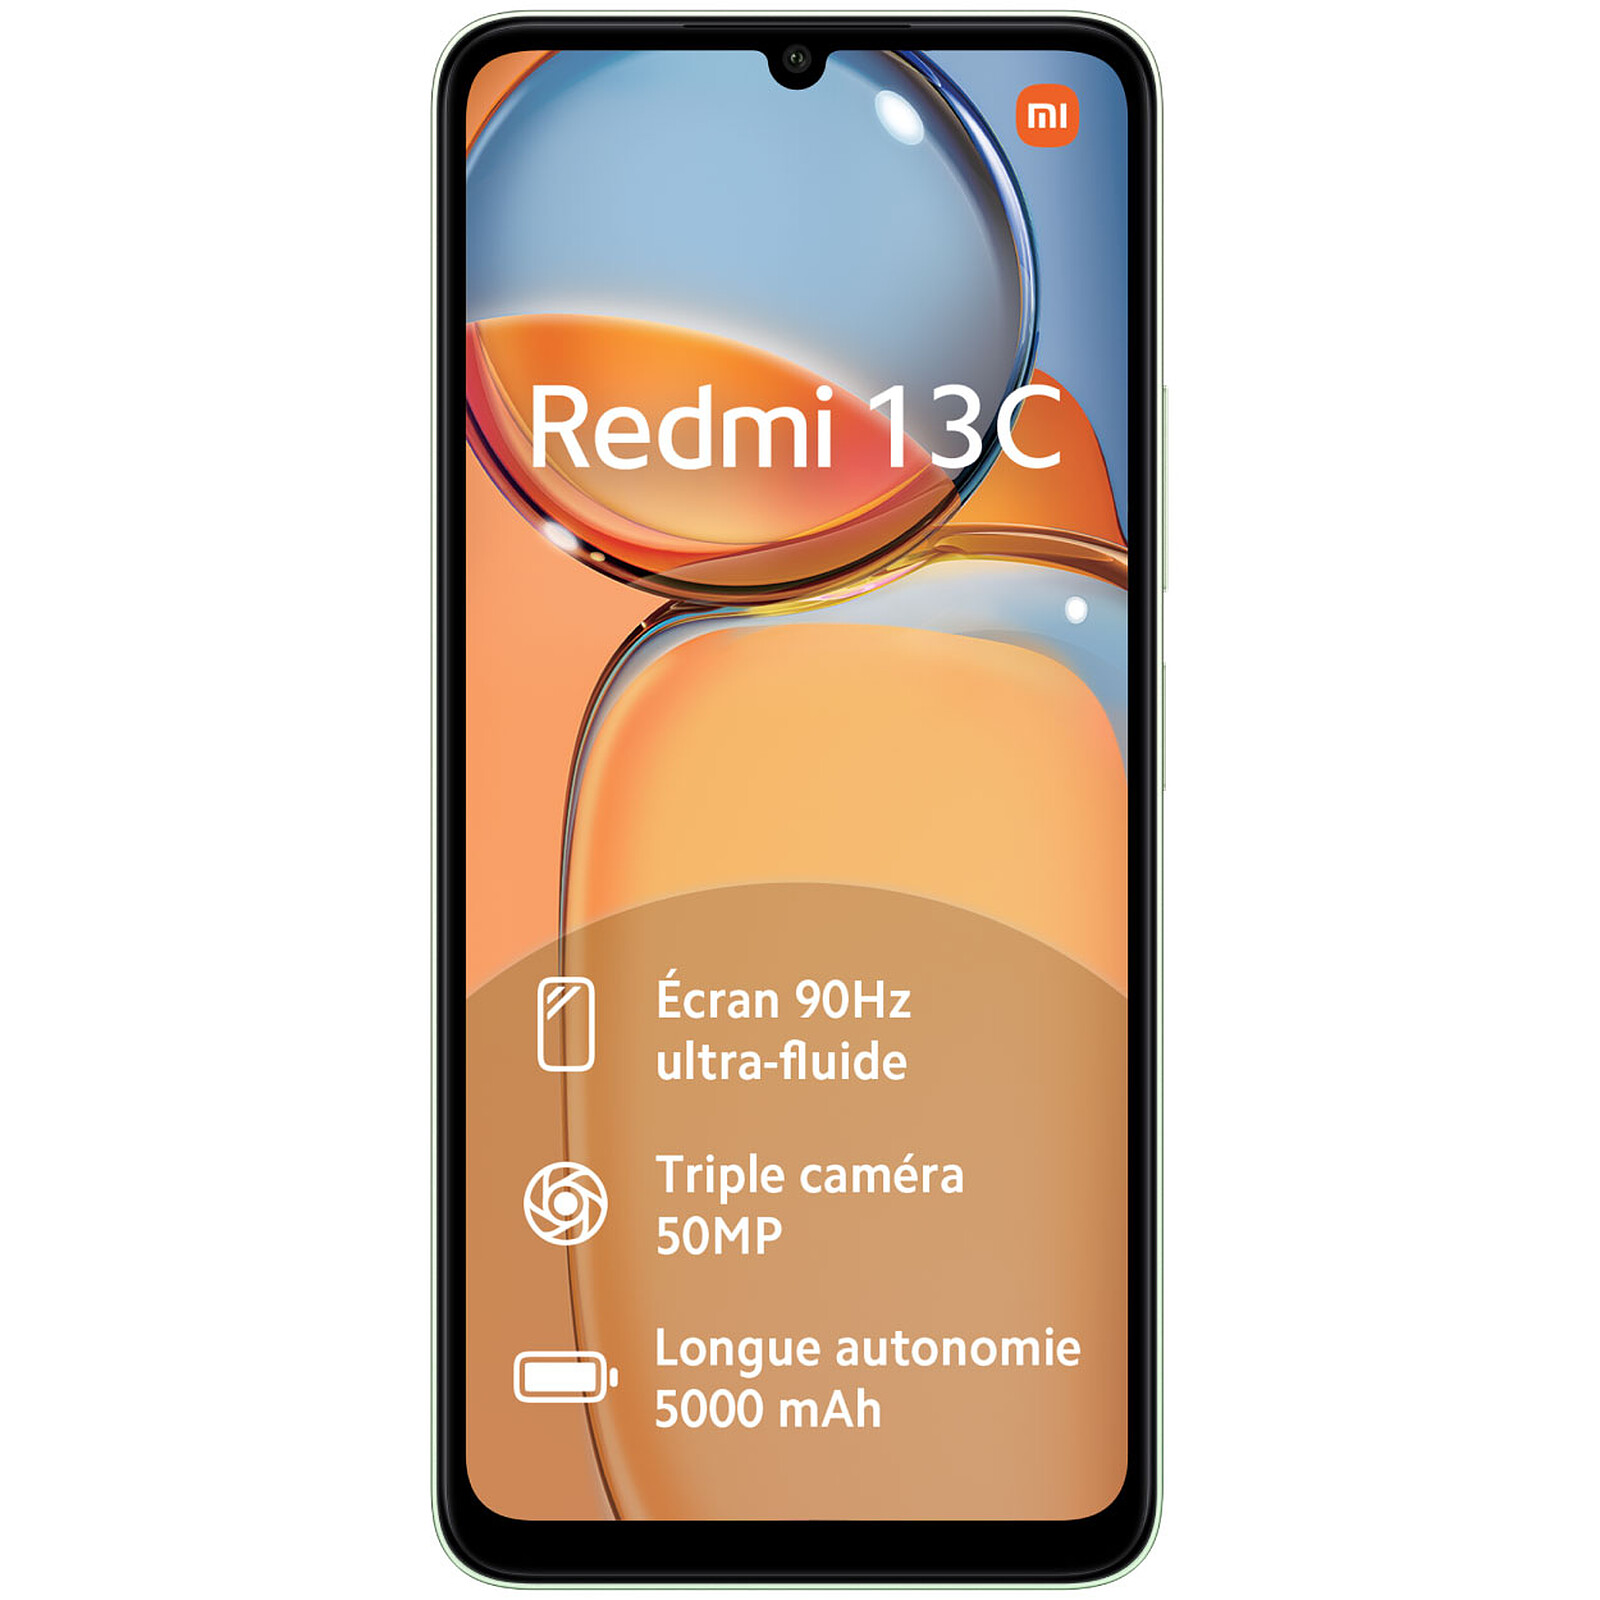 Xiaomi Redmi 13C 8GB/256GB Verde - Teléfono móvil - Sin cargador